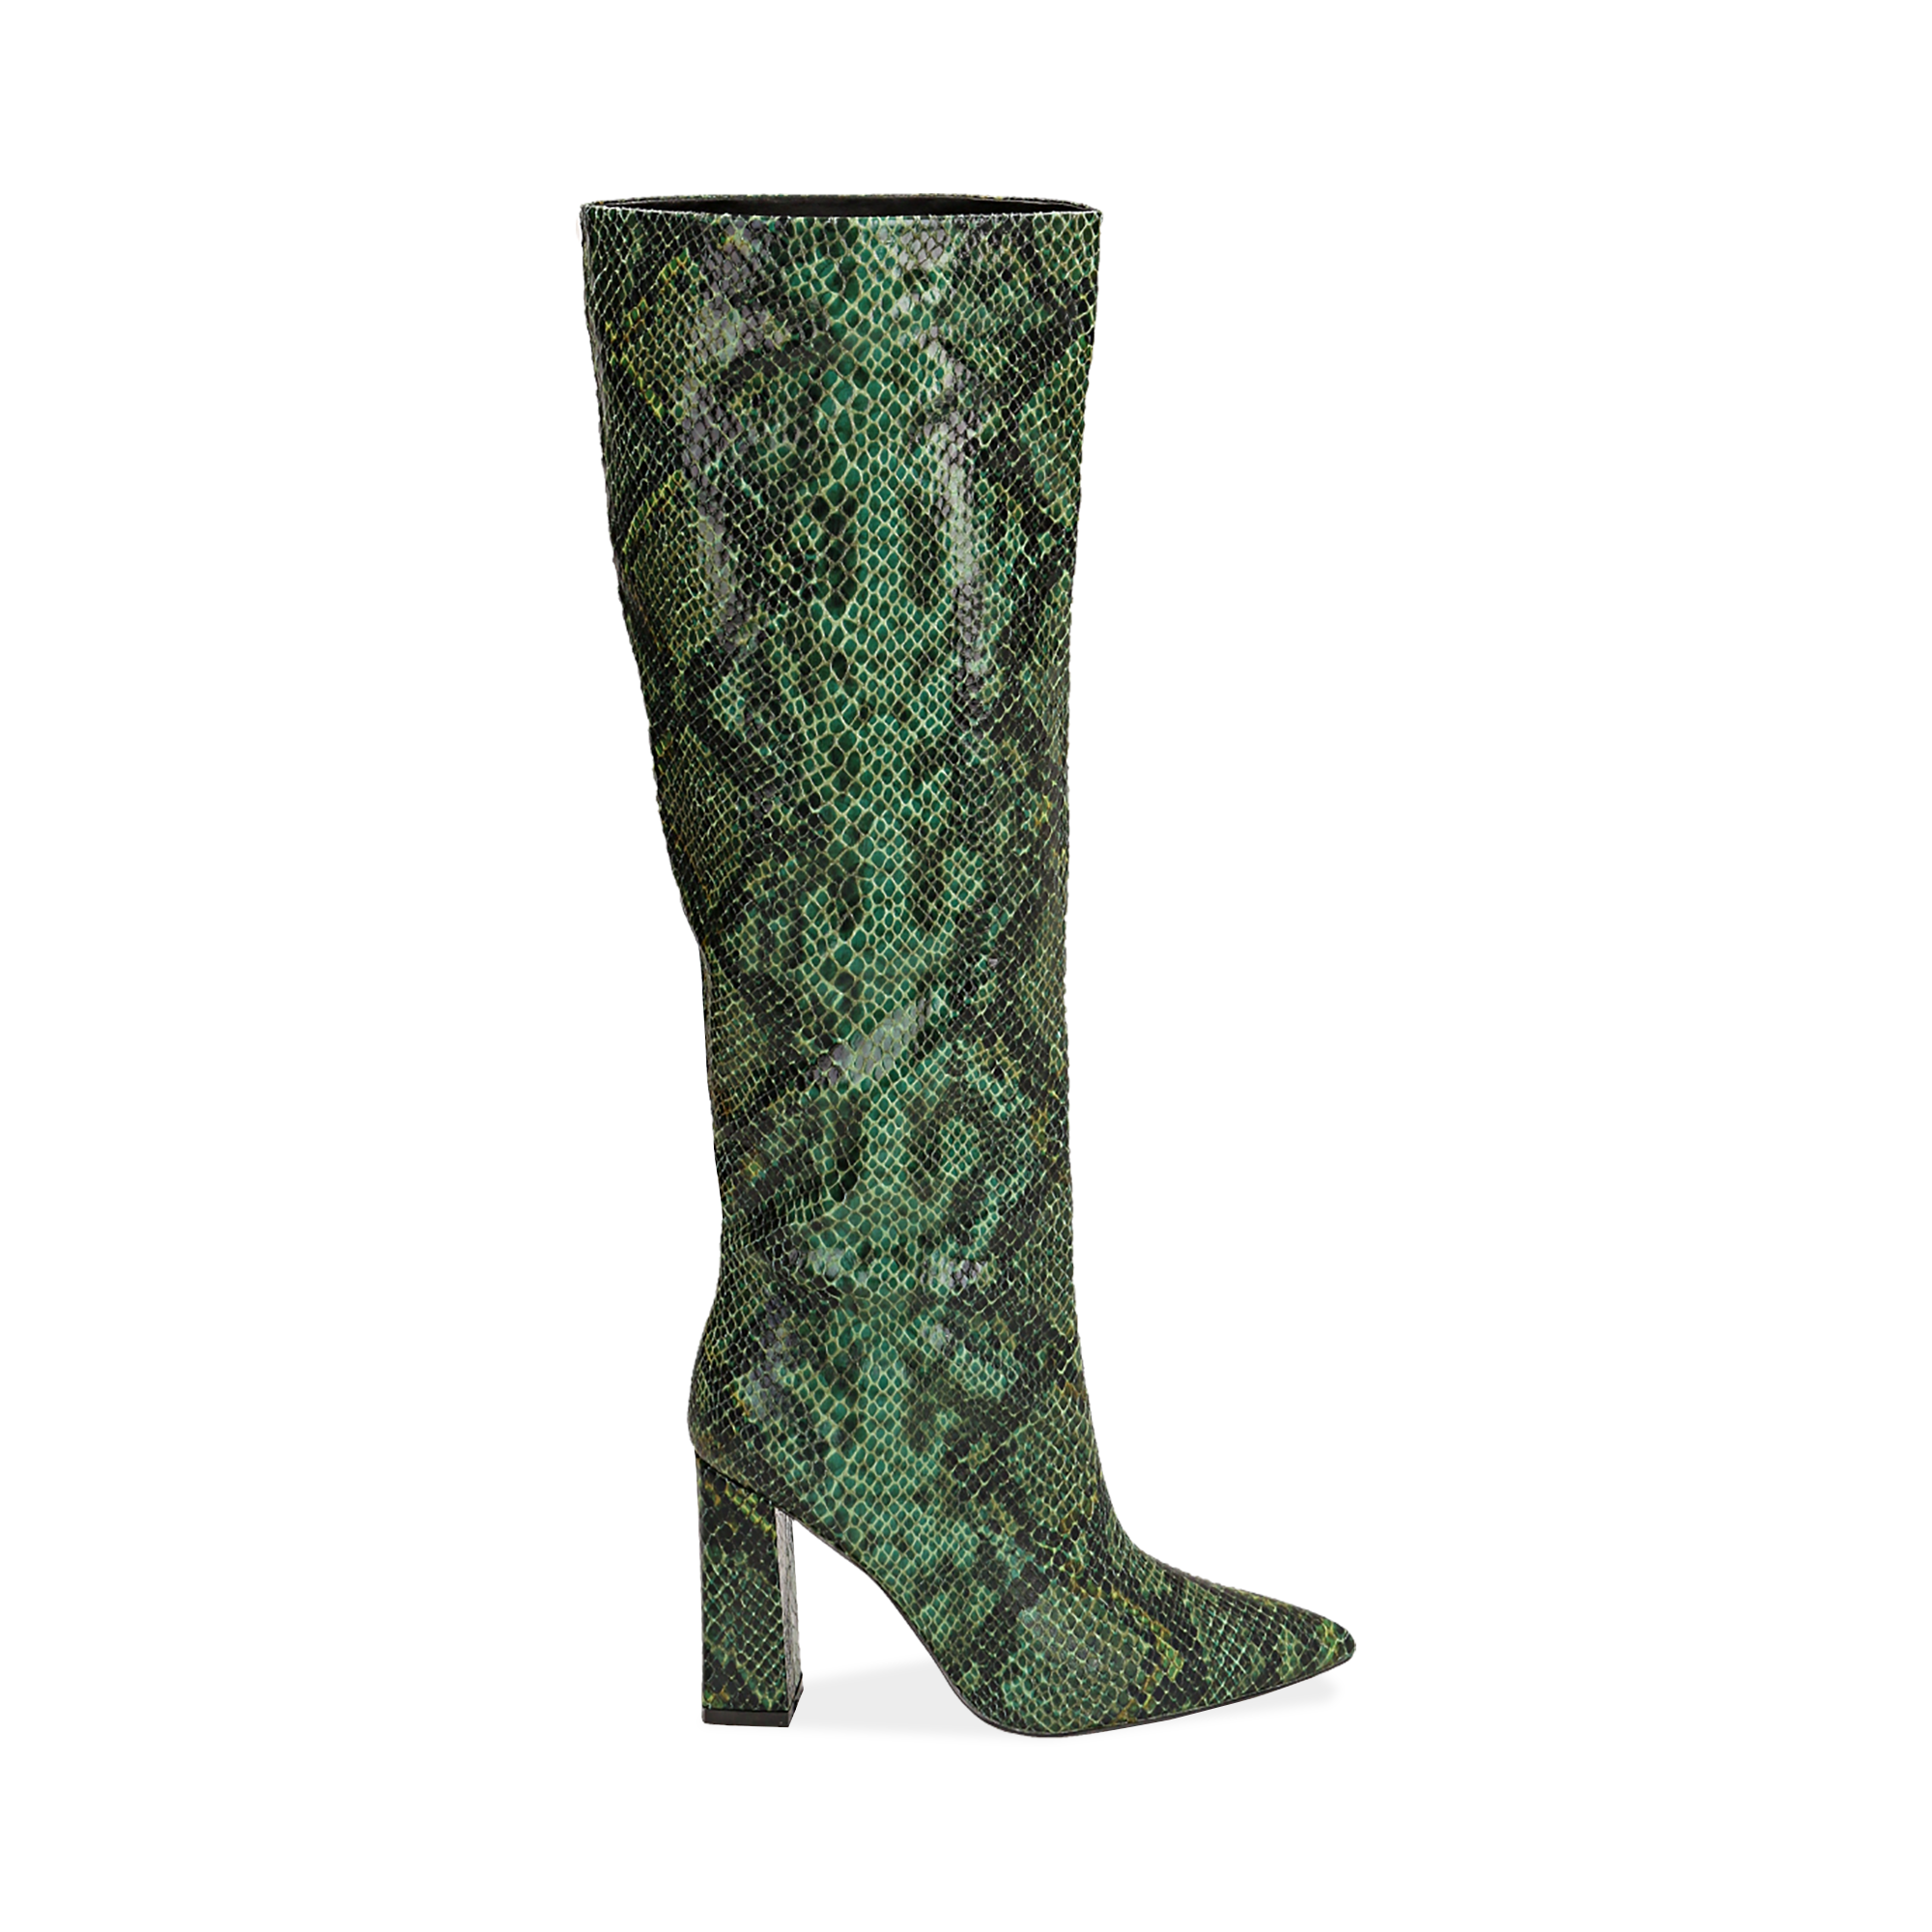 Stivali verdi in eco-pelle stampa pitone, tacco 9,5 cm | Primadonna  Collection